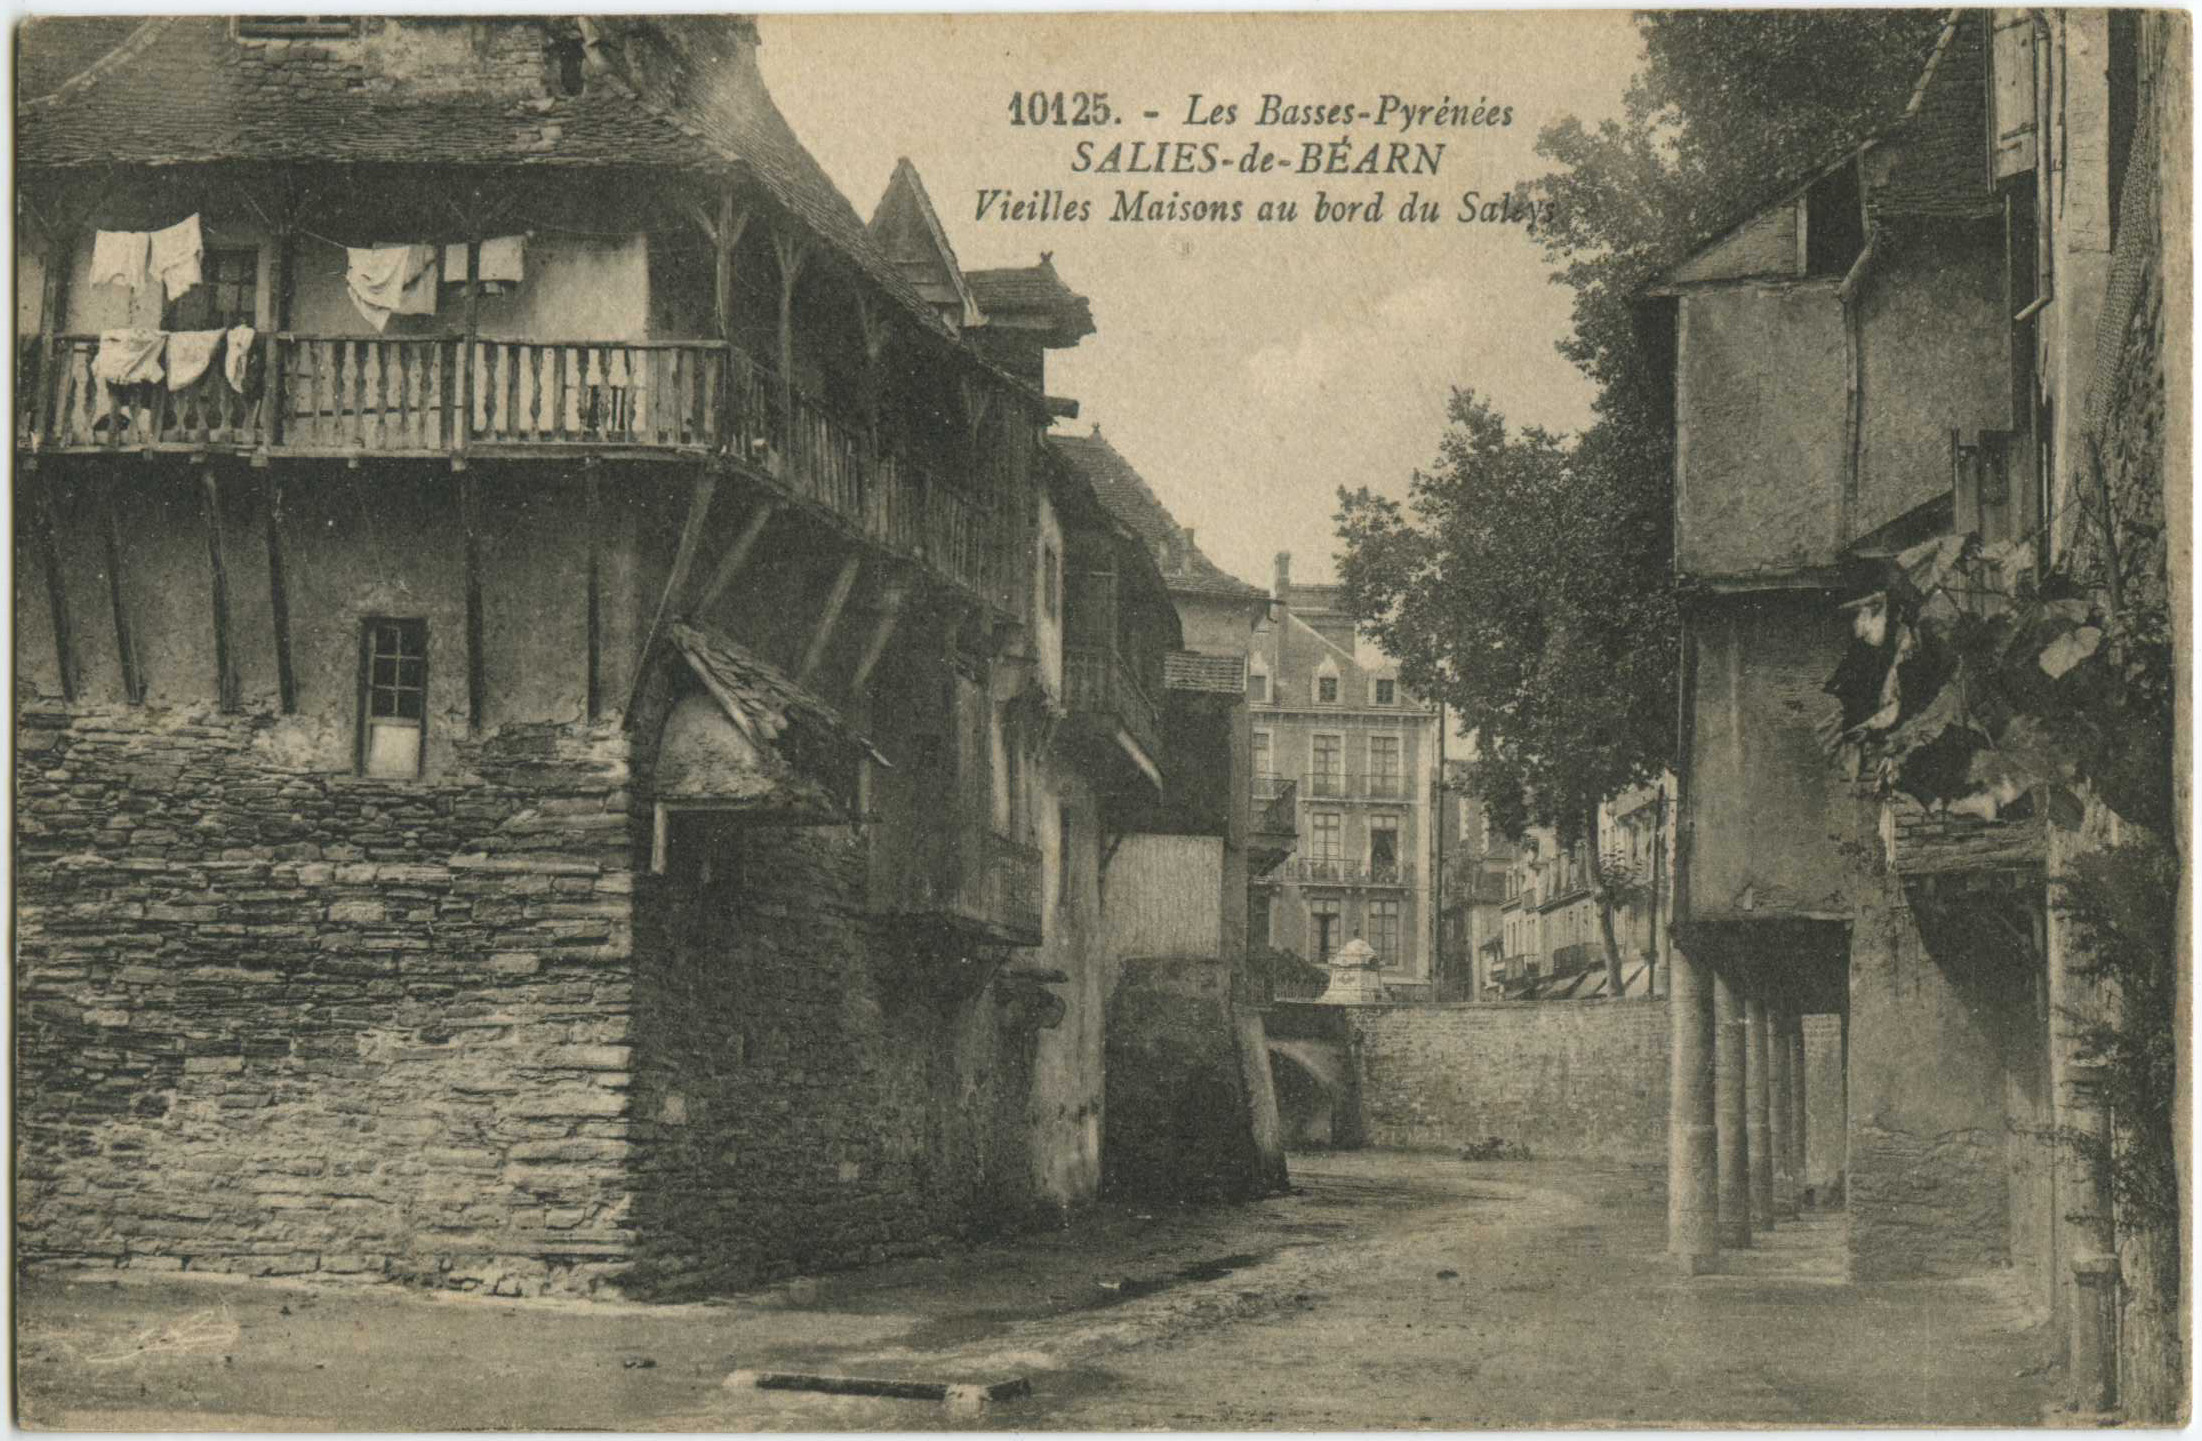 Salies-de-Béarn - Vieilles Maisons au bord du Saleys